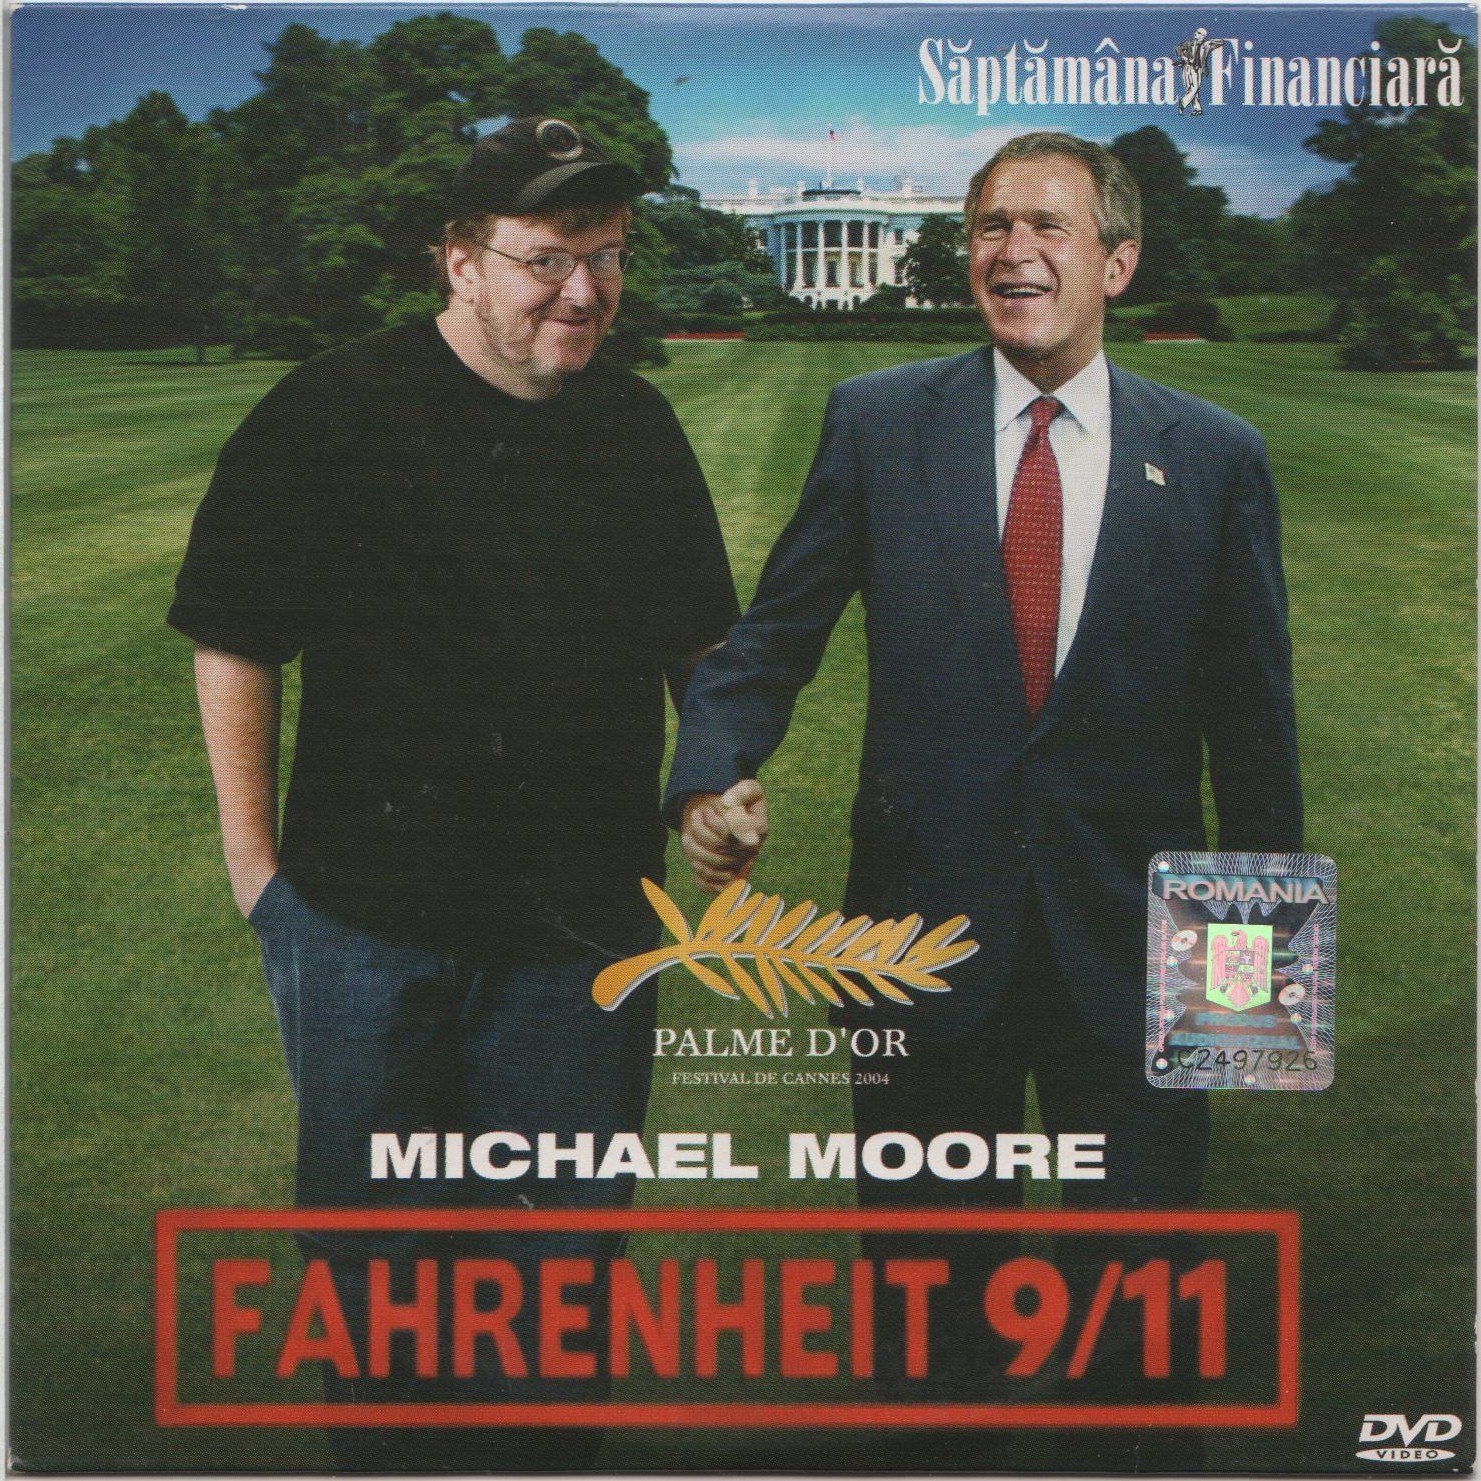 Biografii comentate (XXXIV). Michael Moore, un alt populist de succes/ de Călin Hentea